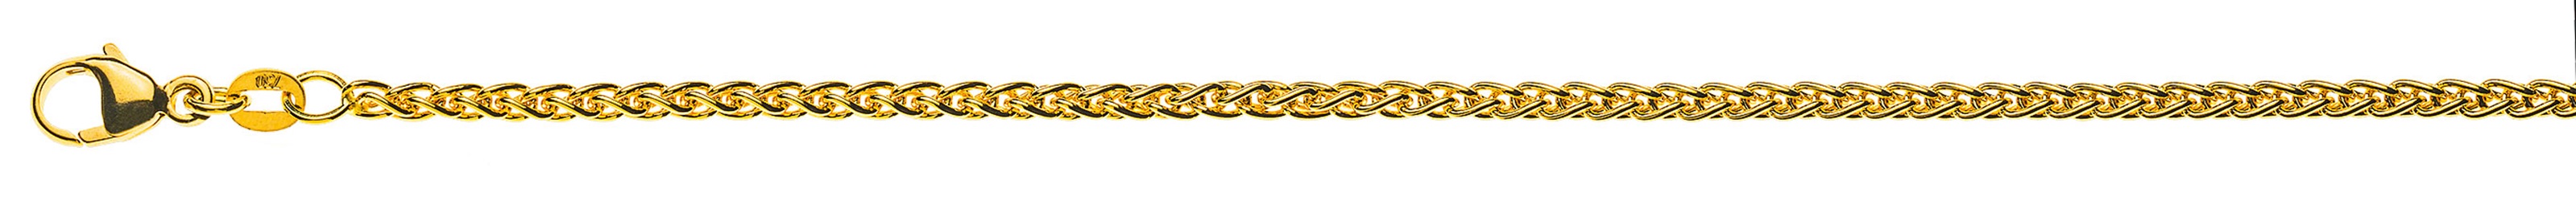 AURONOS Prestige Halskette Gelbgold 18K Zopfkette 50cm 2.5mm